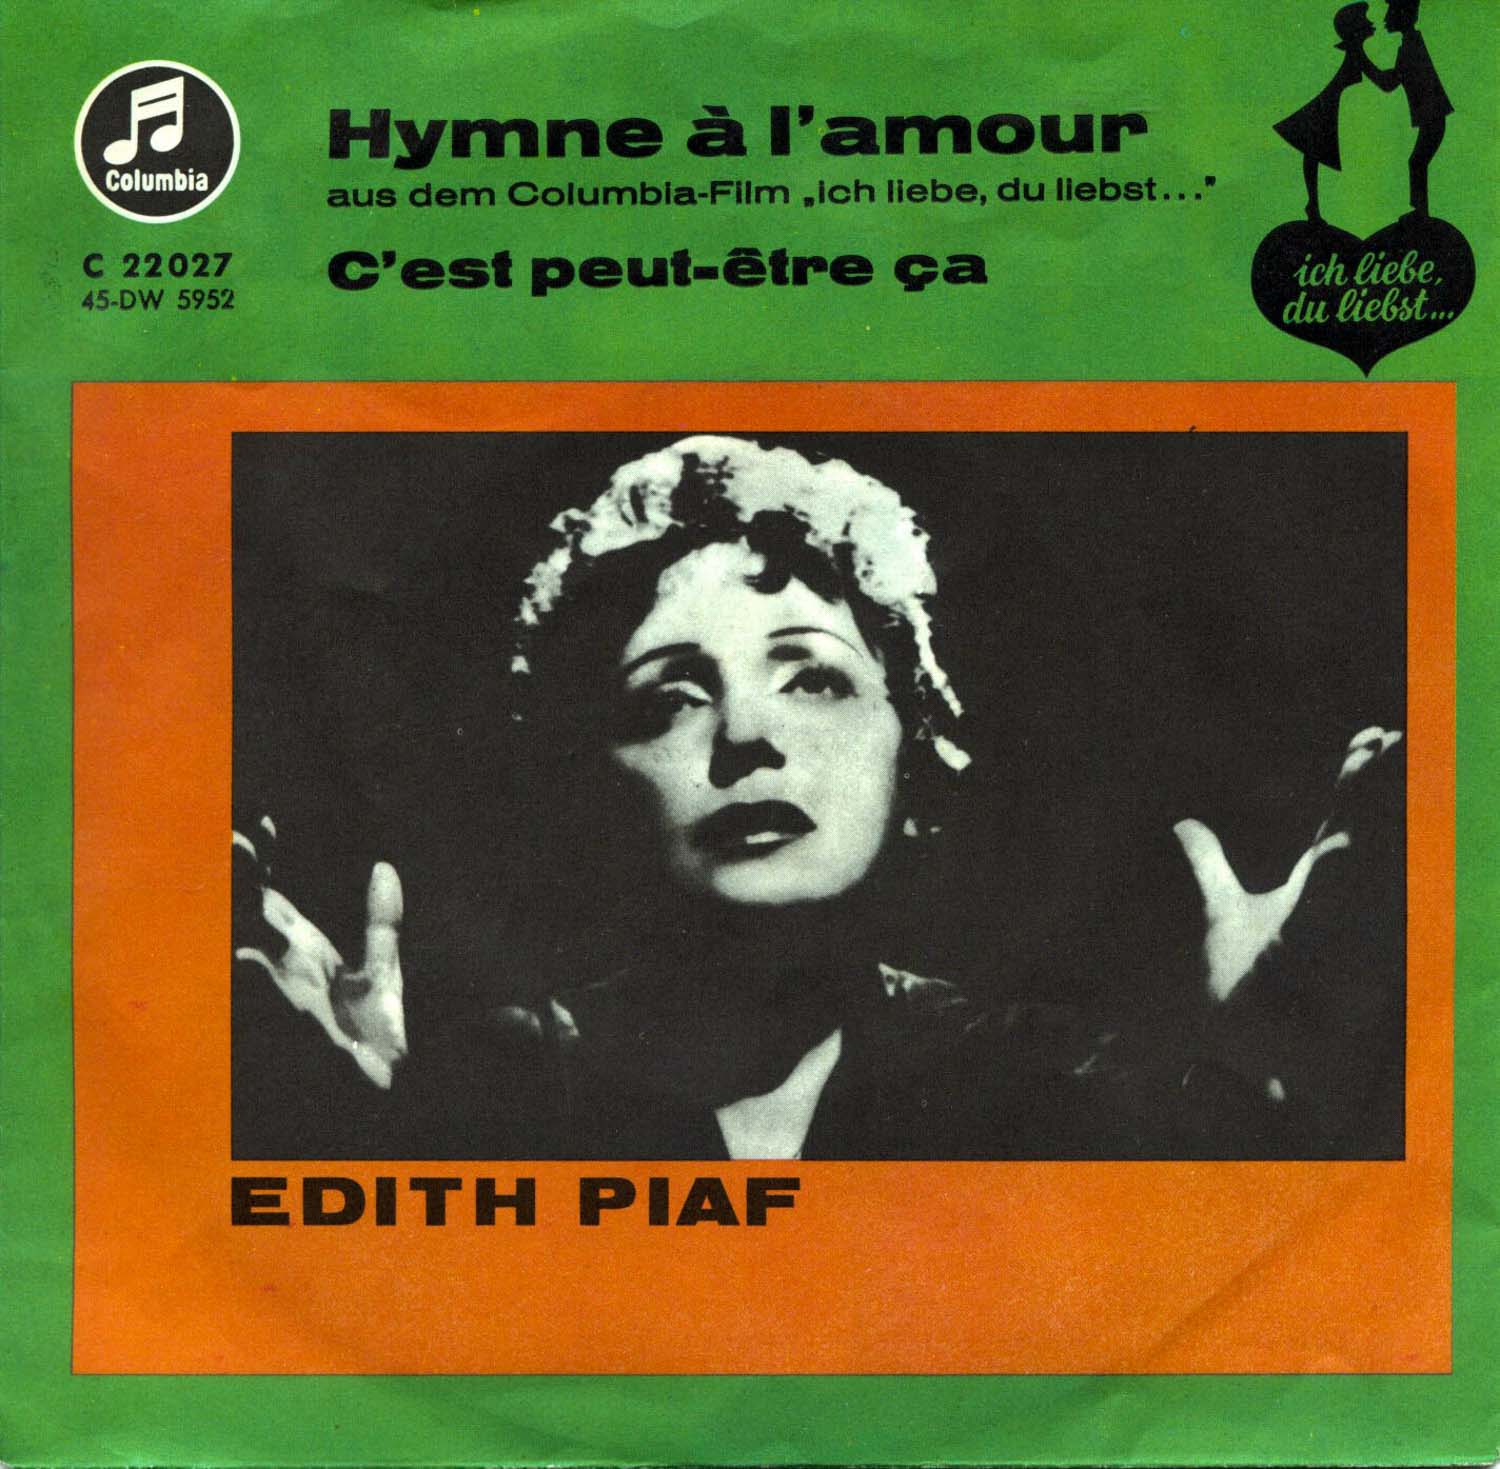 Edith Piaf  Hymne a l'amour / C'est peut-etre ca (C 22 027)  *Single 7'' (Vinyl)*. 